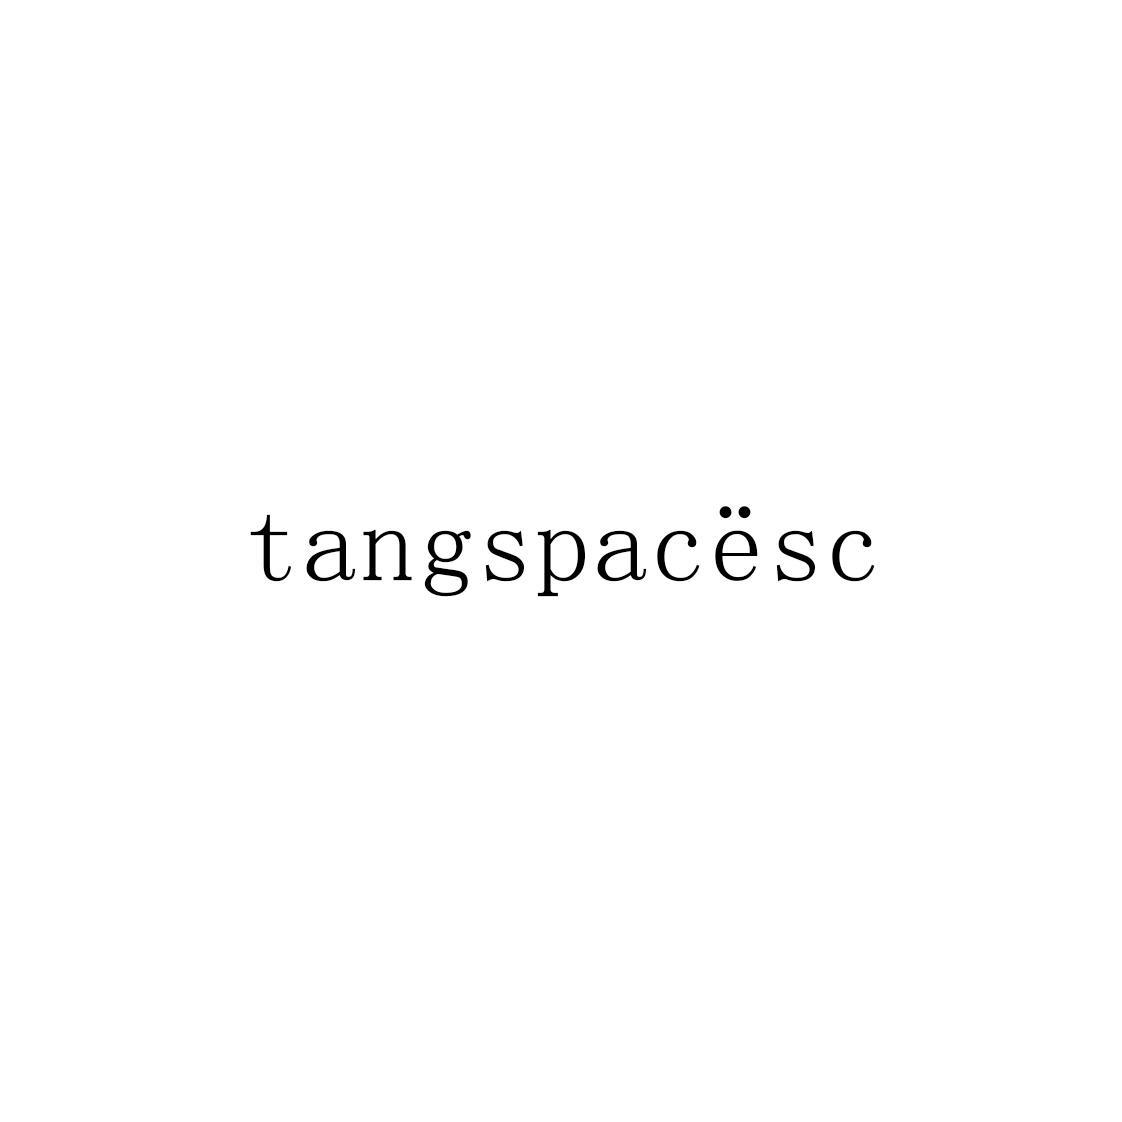 TANGSPACESC